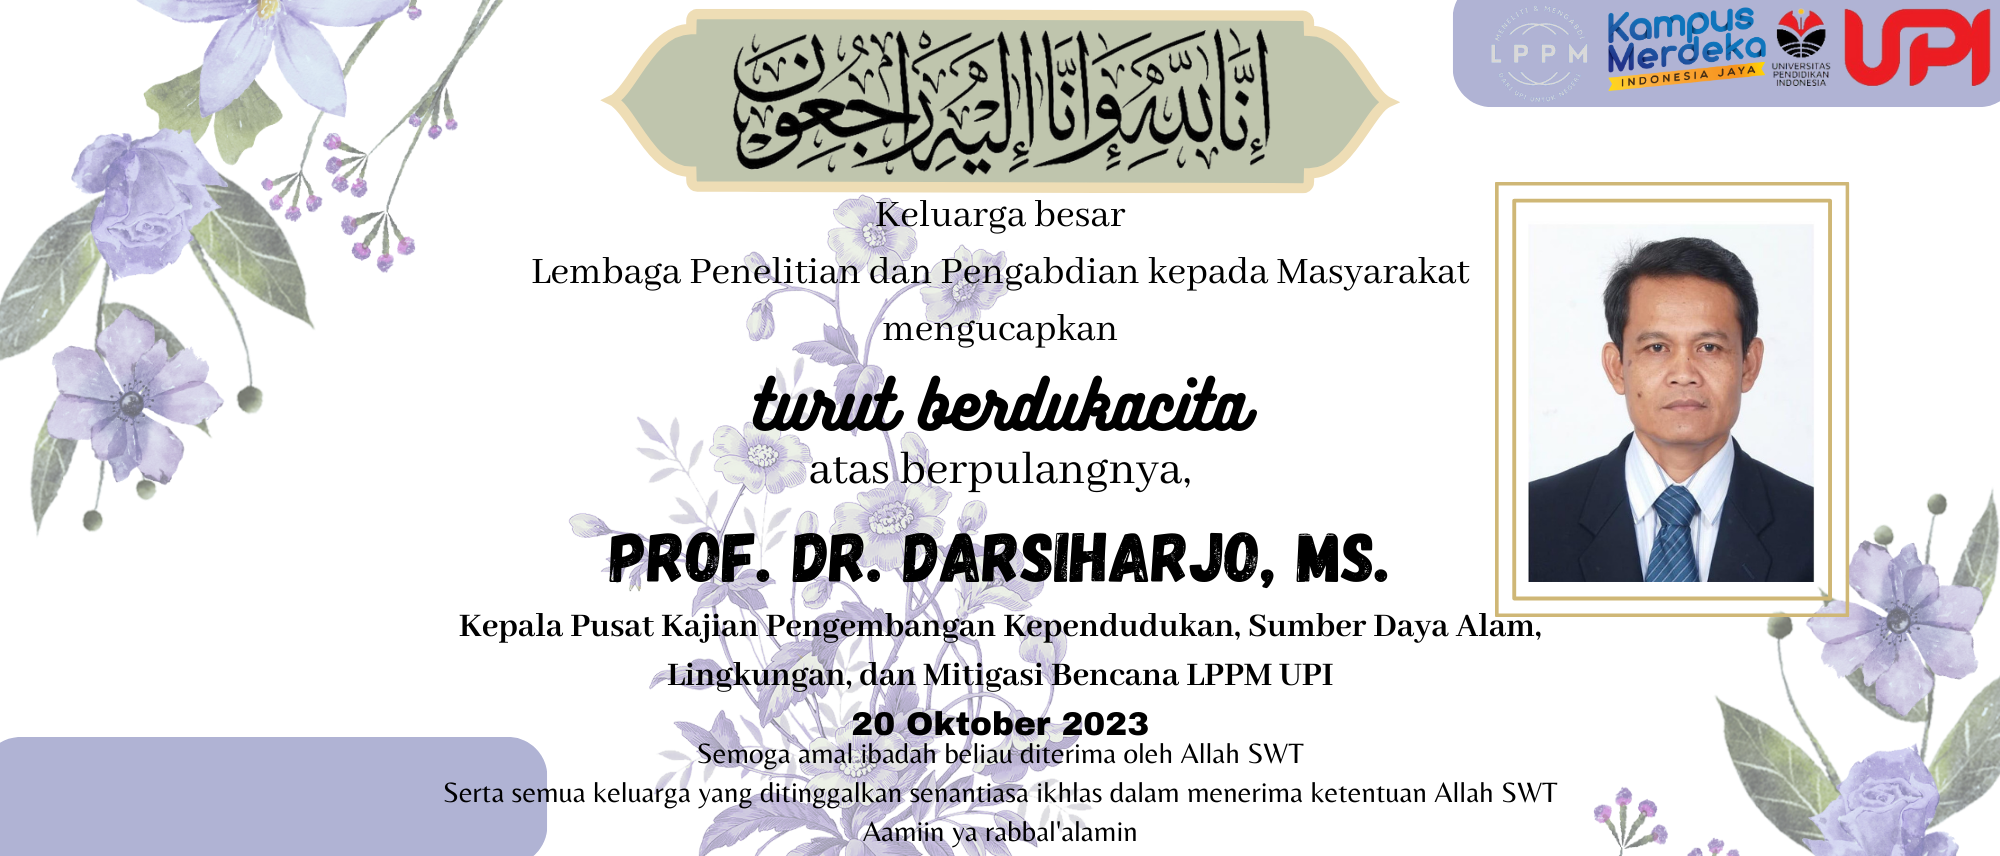 Berita Duka Prof. Dr. Darsiharjo, MS.